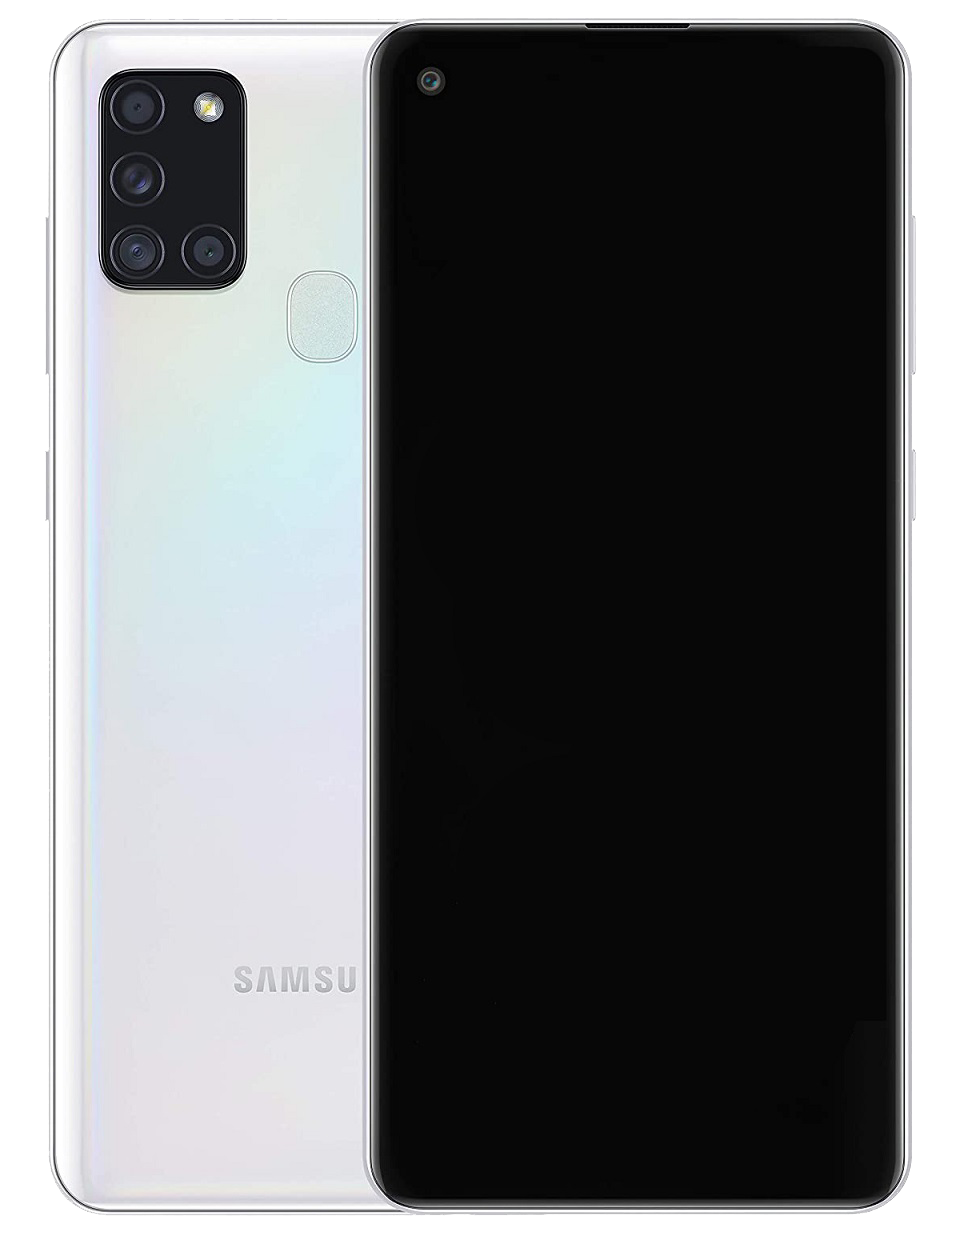 Samsung Galaxy A21s Dual-SIM weiß - Ohne Vertrag